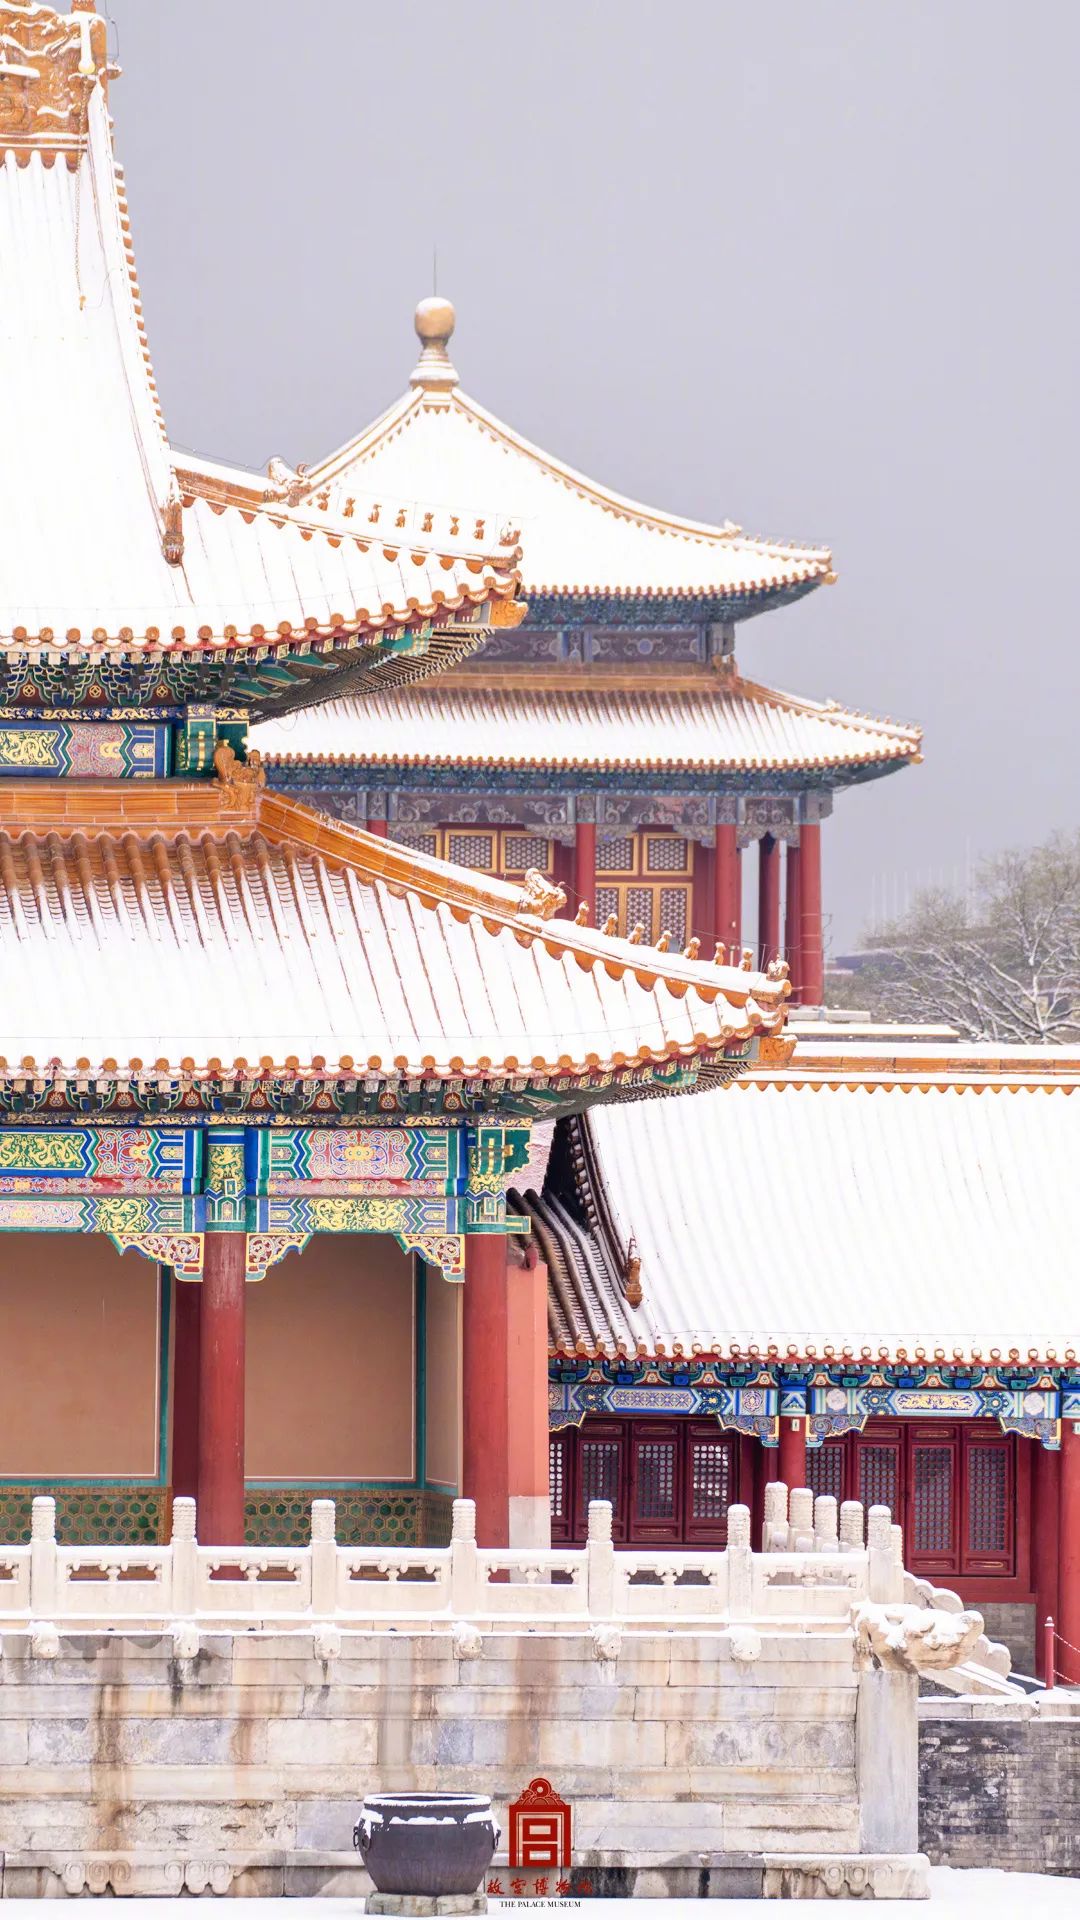 宫阙巍峨,祺然有灵让故宫换上了紫禁城·雪景限定装北京纷纷扬扬的一